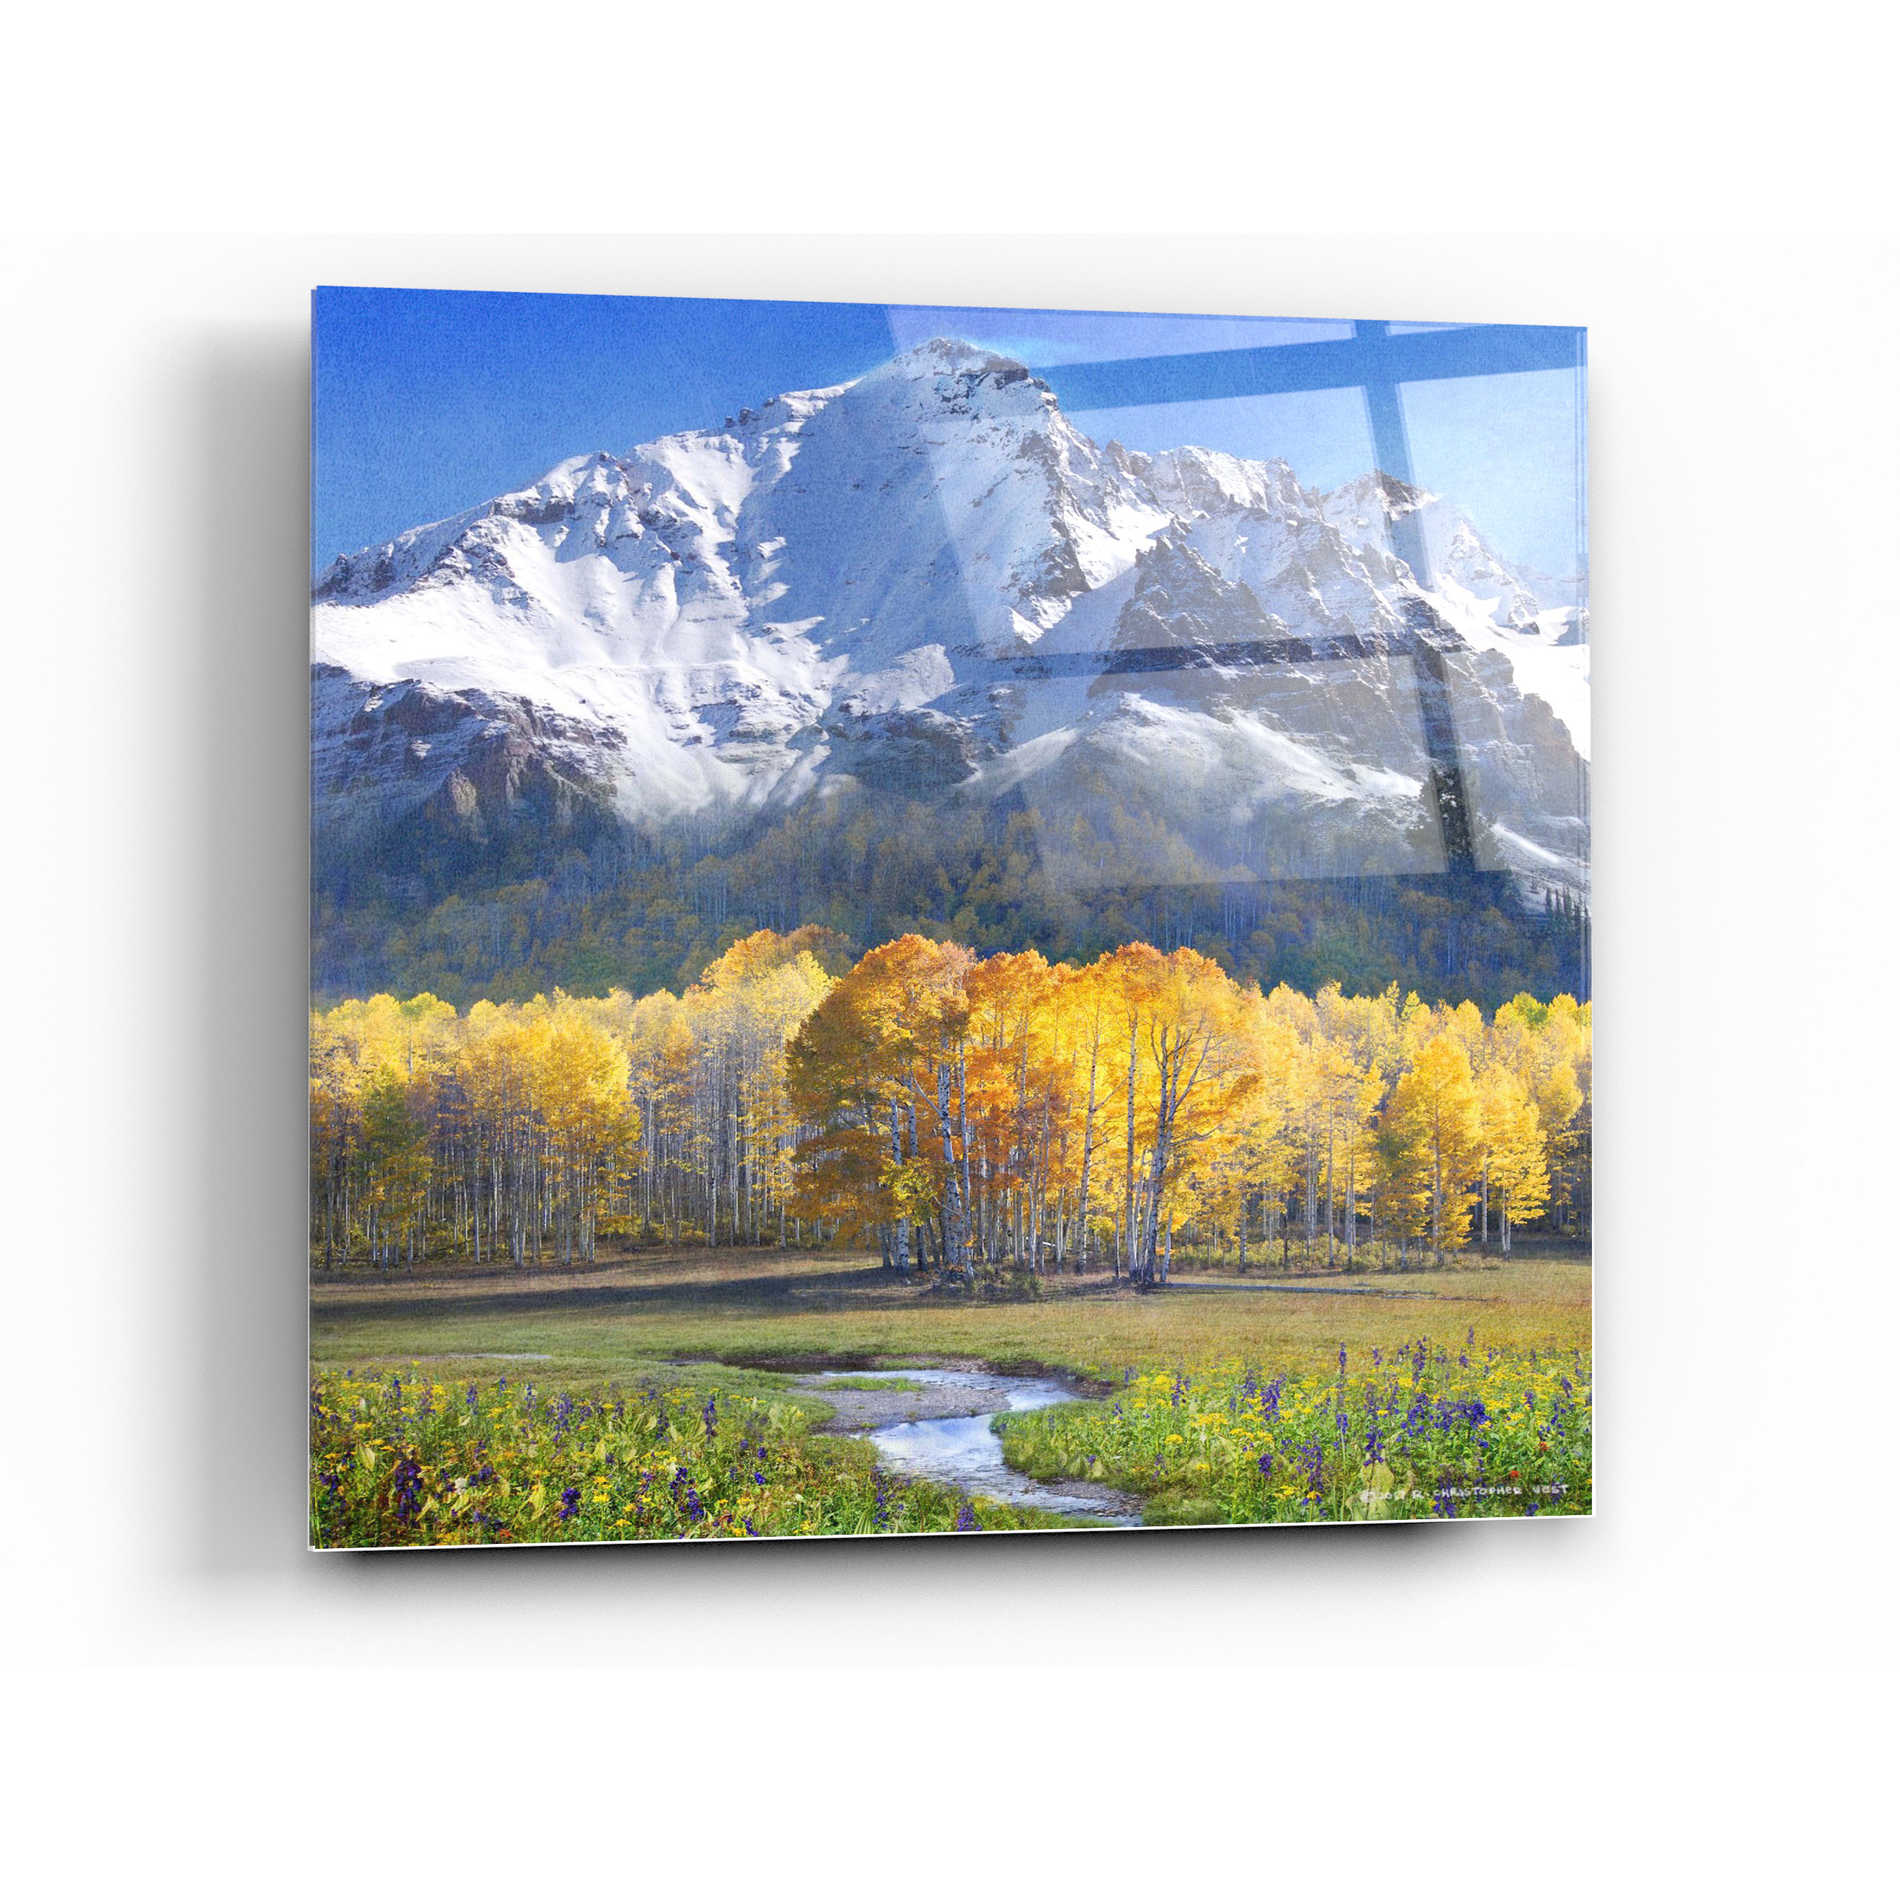 Epic Art 'Idyllic Mountain' by Chris Vest, Acrylic Glass Wall Art,36x36